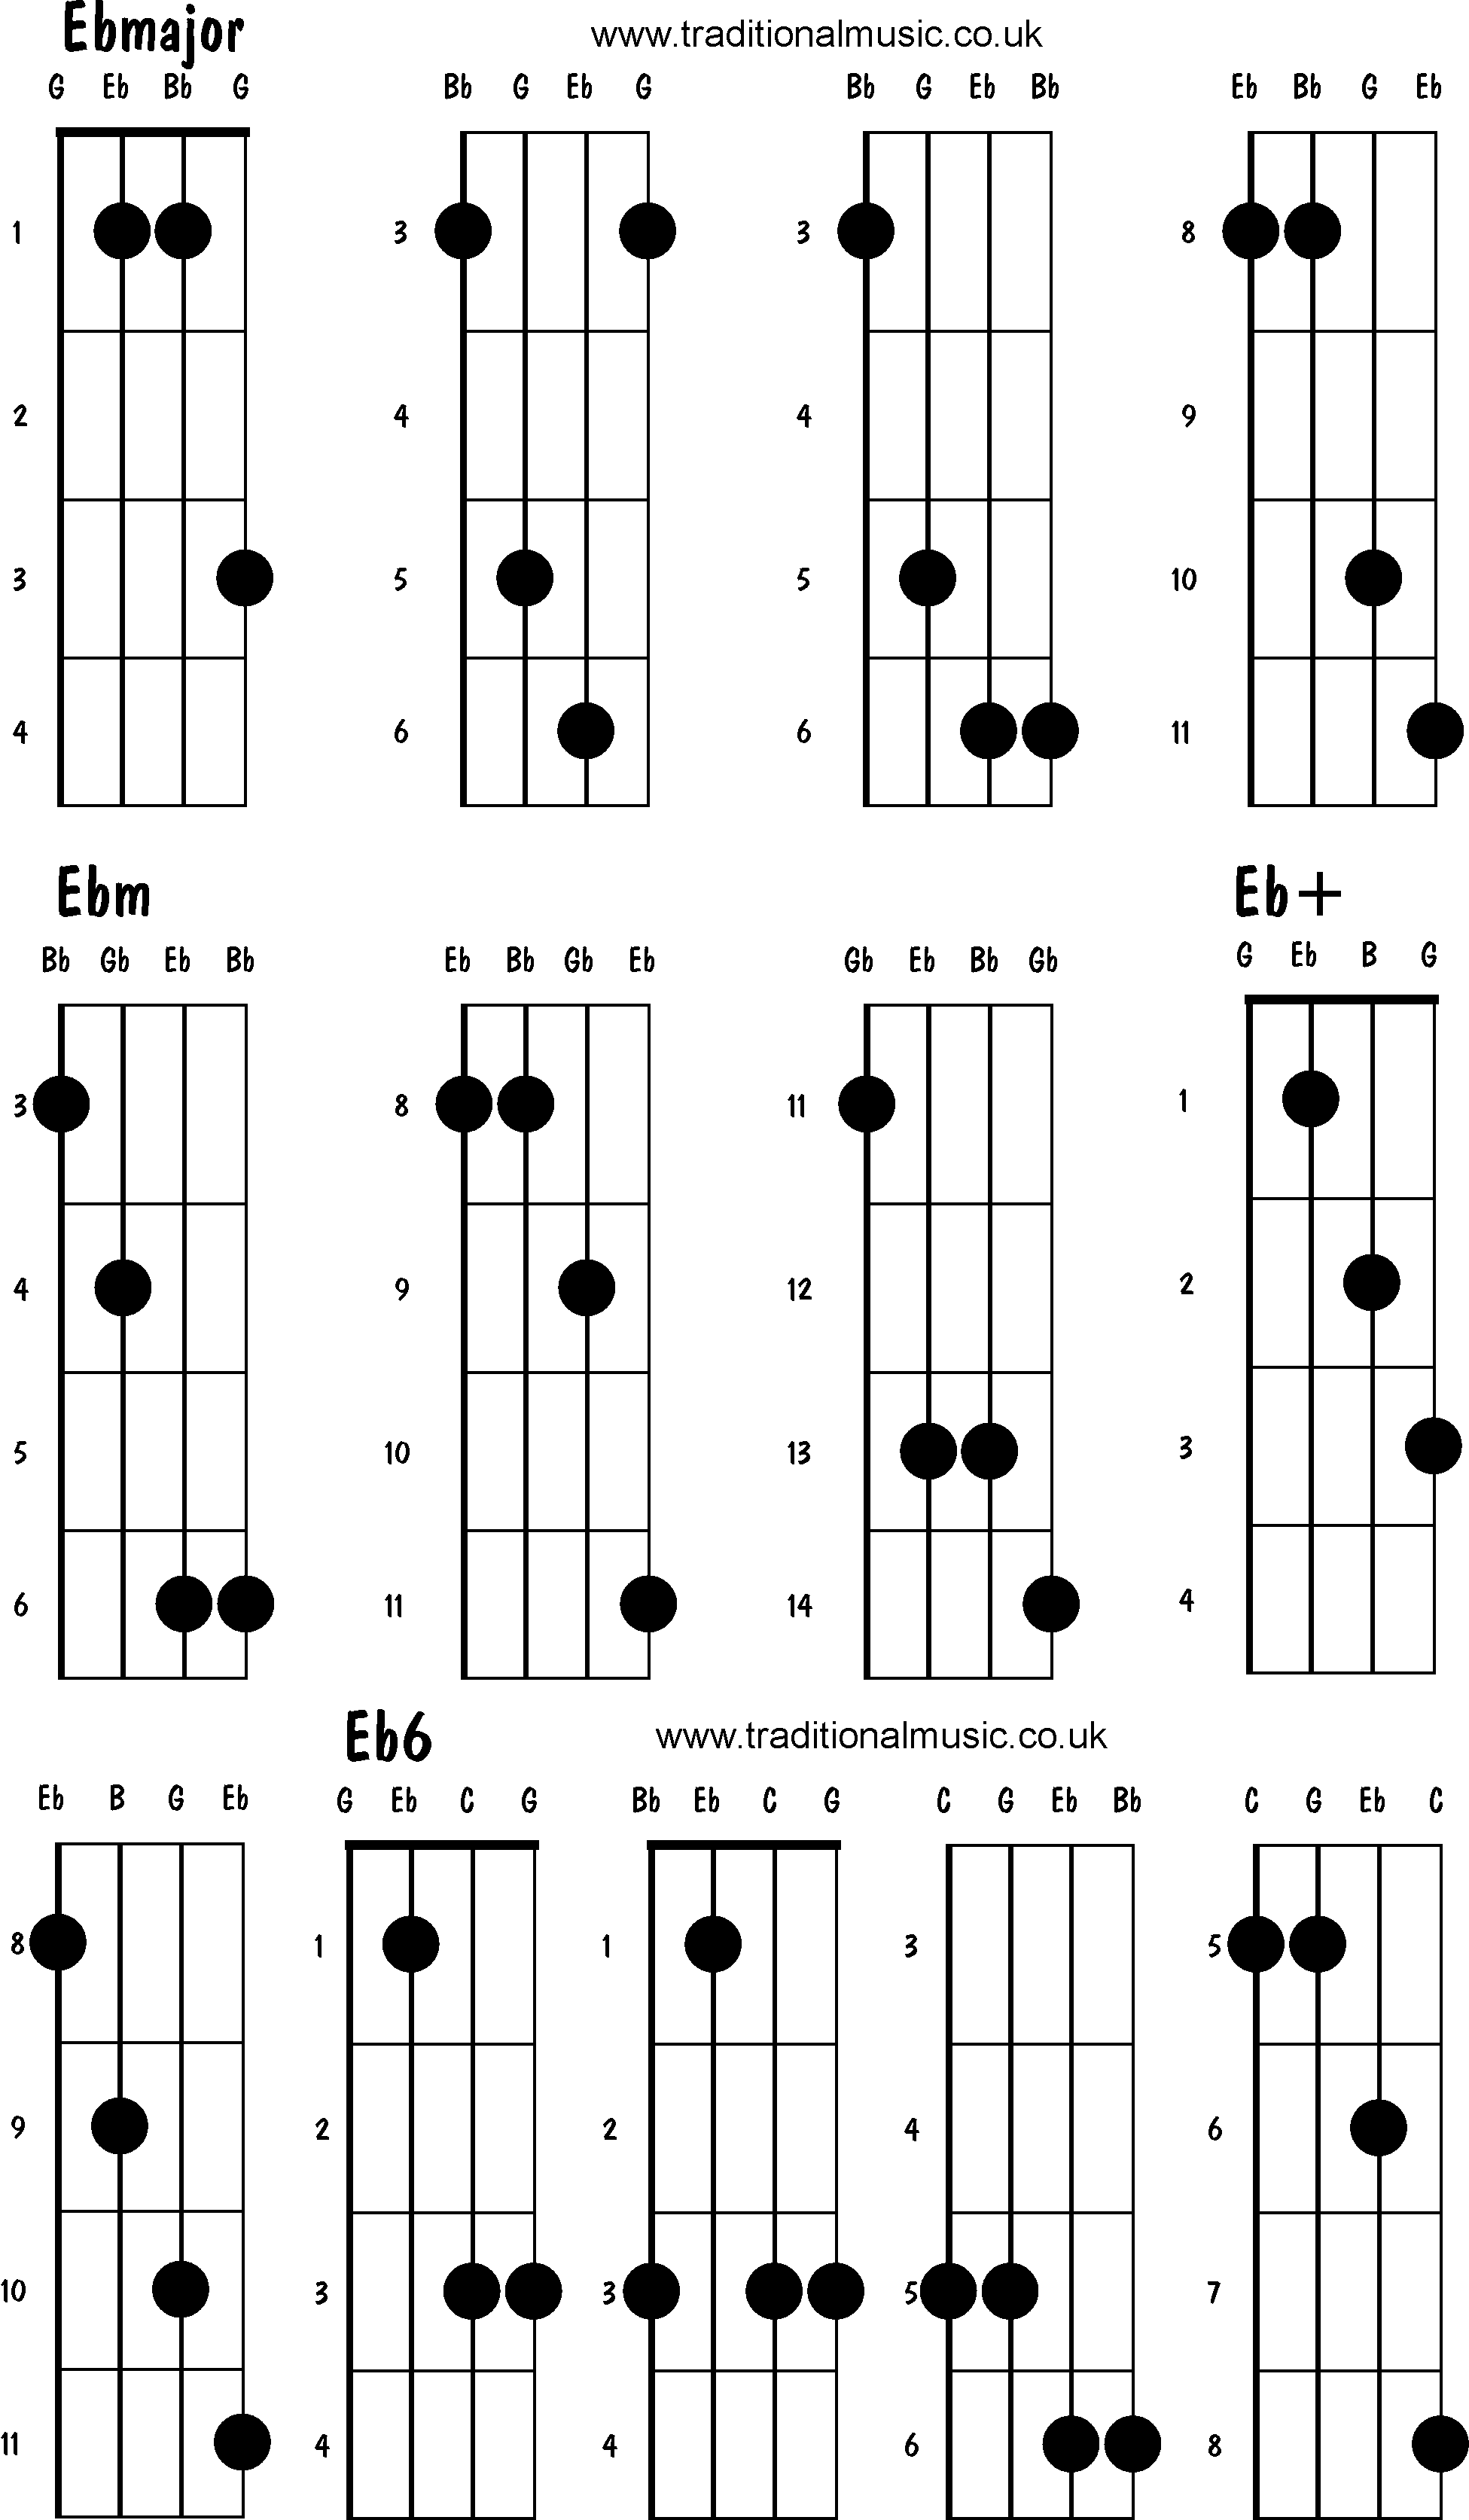 Advanced mandolin chords: Ebmajor, Ebm, Eb+, Eb6